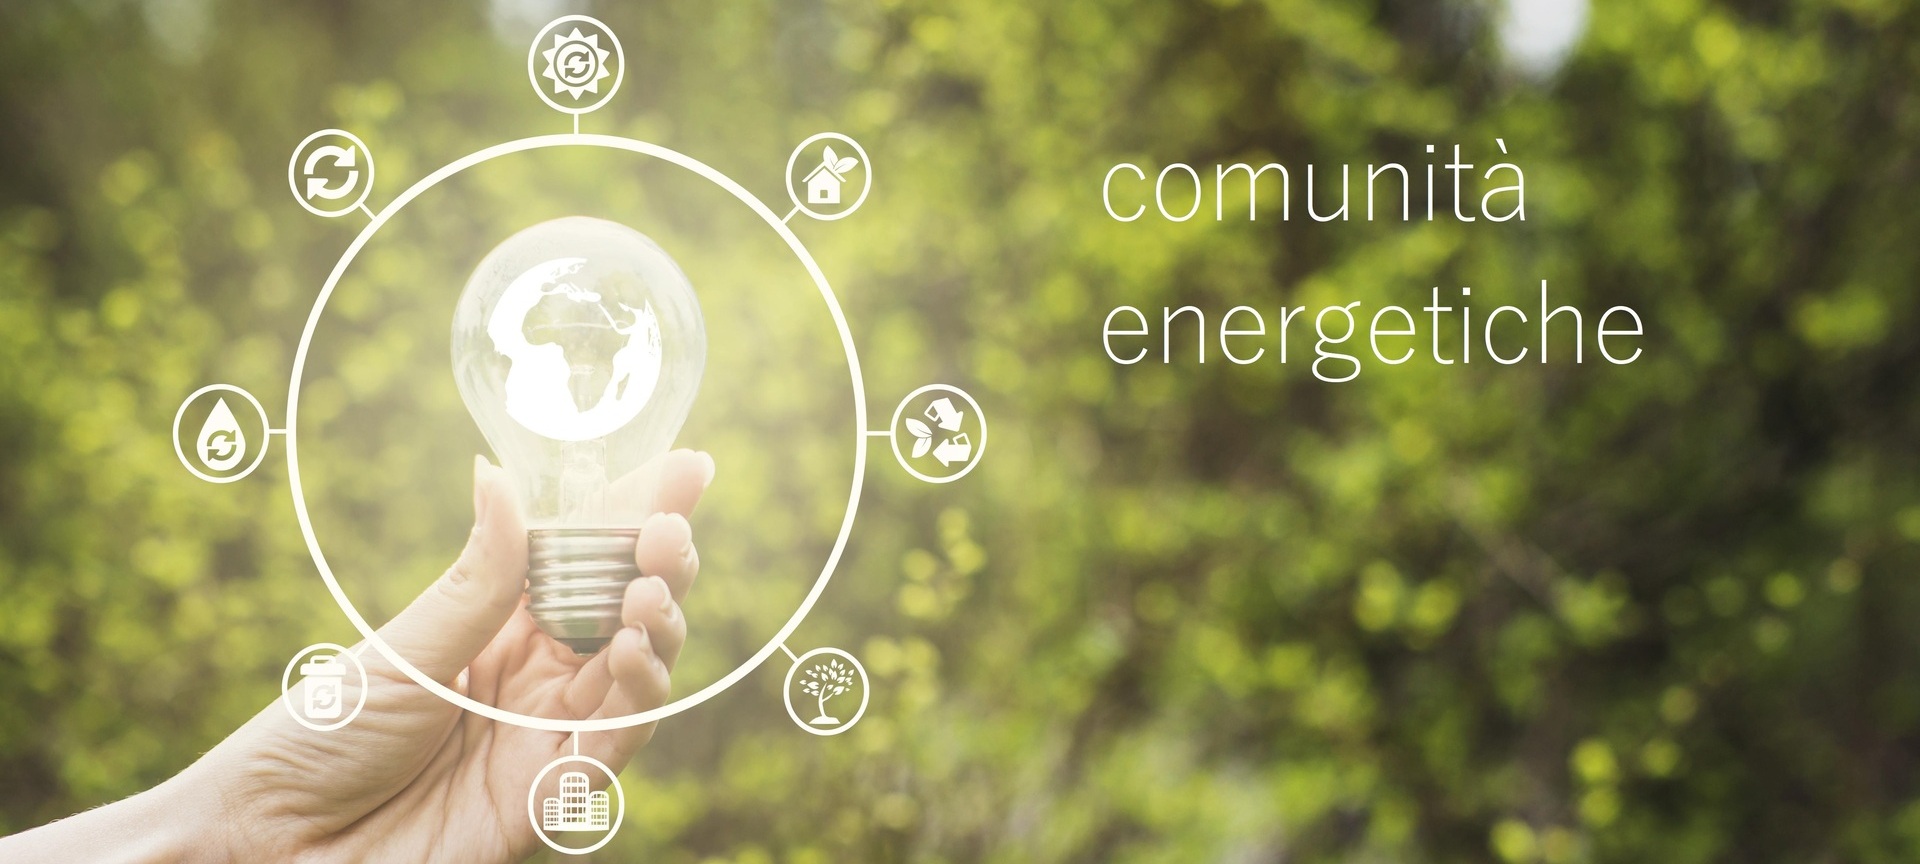 Comunità Energetiche Rinnovabili, una Roadmap per imprese, enti locali e territorio